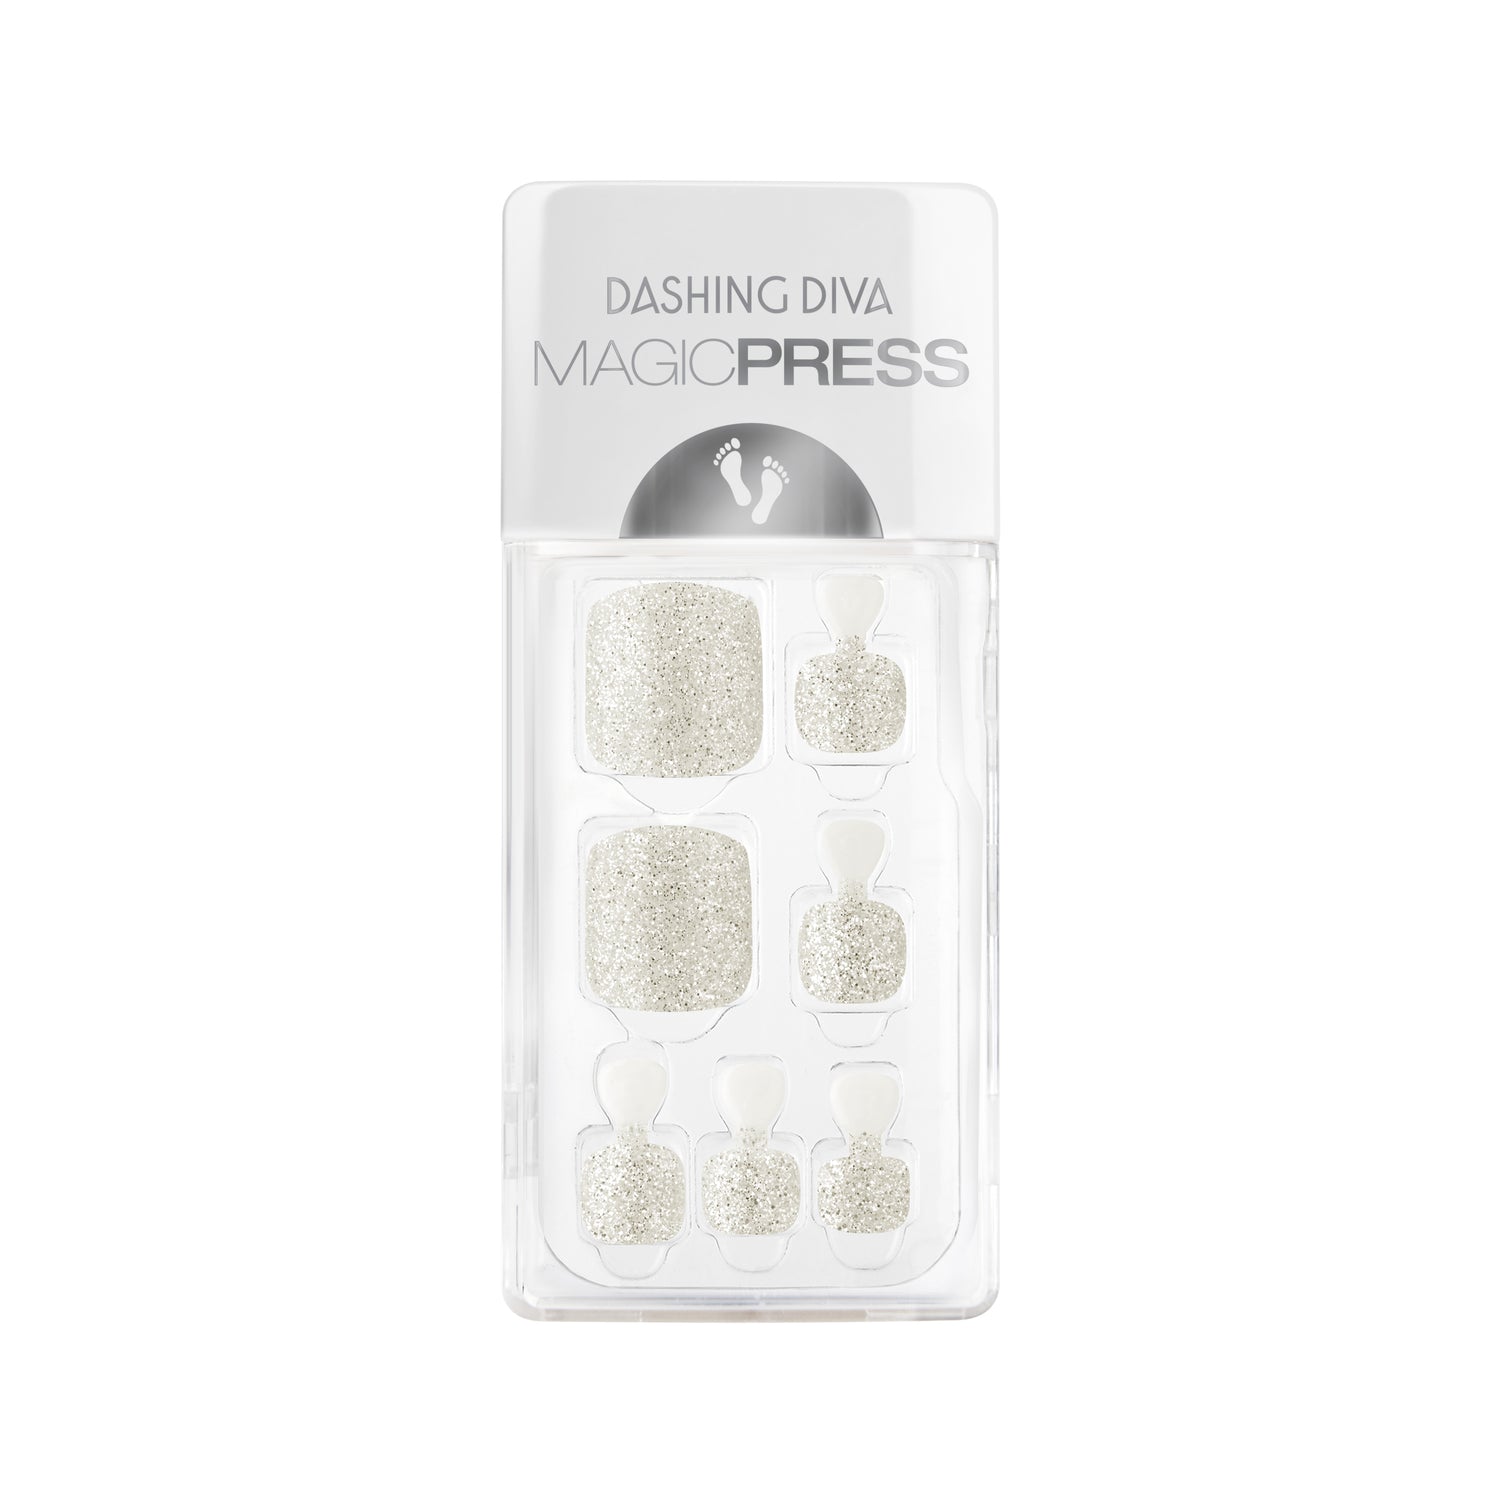 Dashing Diva MAGIC PRESS Pedicure white press on gel pedi with silver glitter finish.